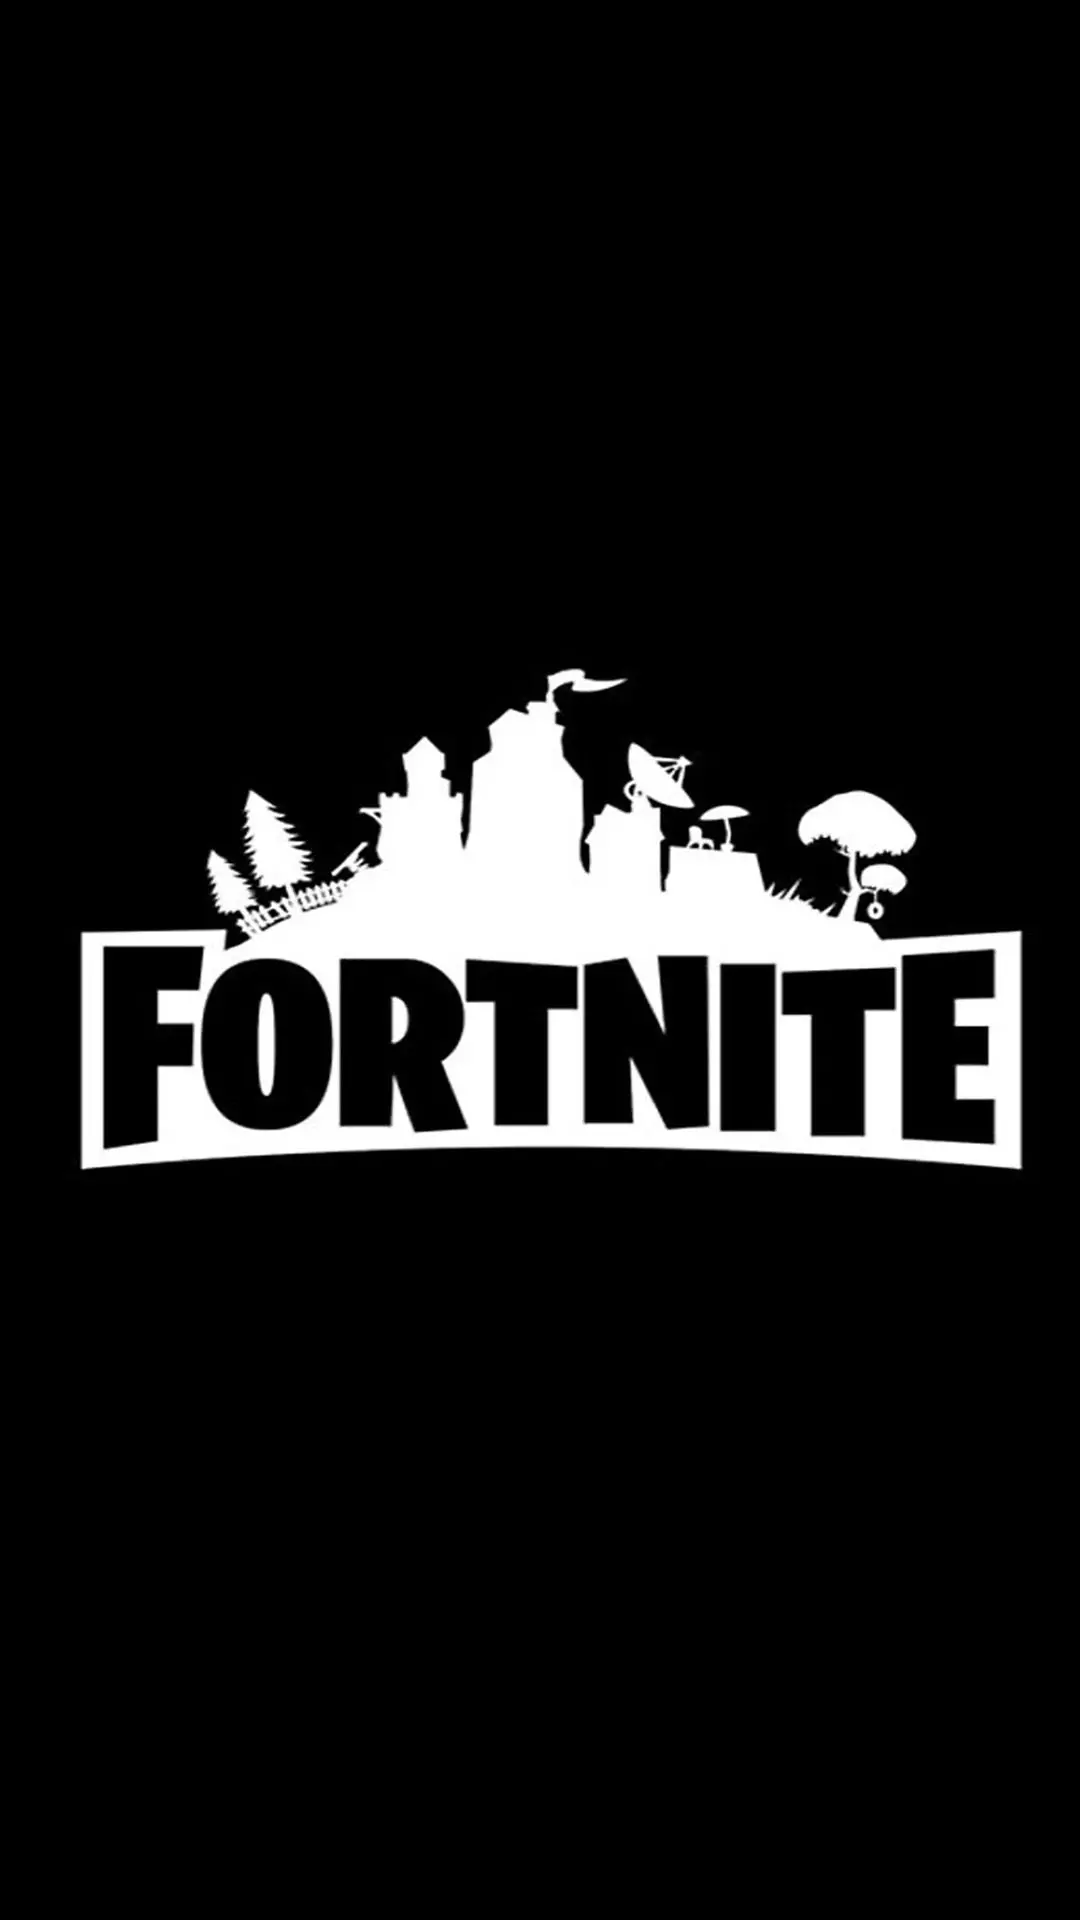 Fortnite Battle Royale, в частности, стала оглушительным успехом - менее чем за год привлекла более 125 миллионов игроков, зарабатывая сотни миллионов долларов в месяц и став лидером и культурным феноменом.